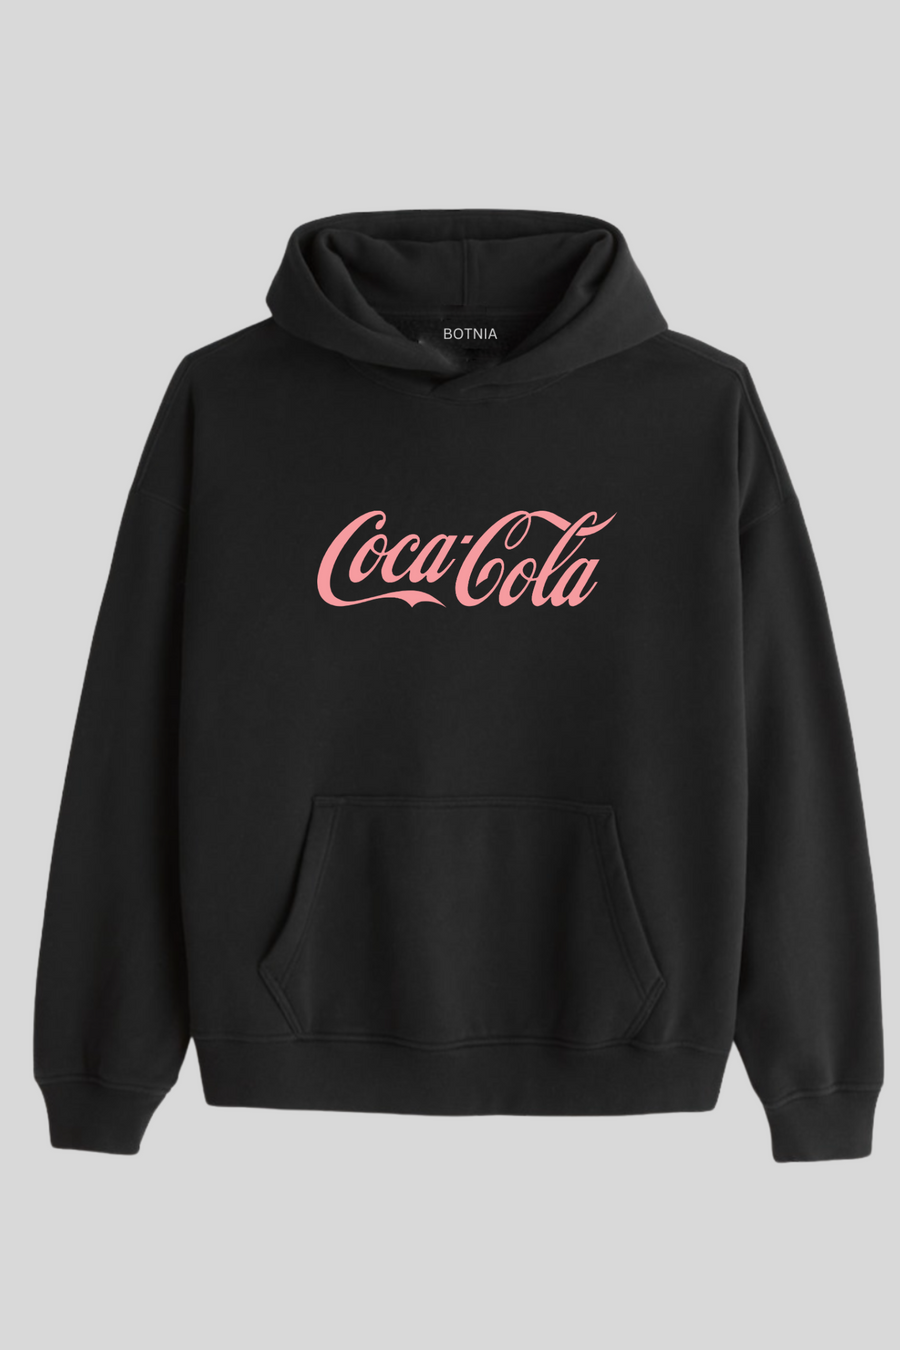 Coca-Cola-Oversized Hoodie